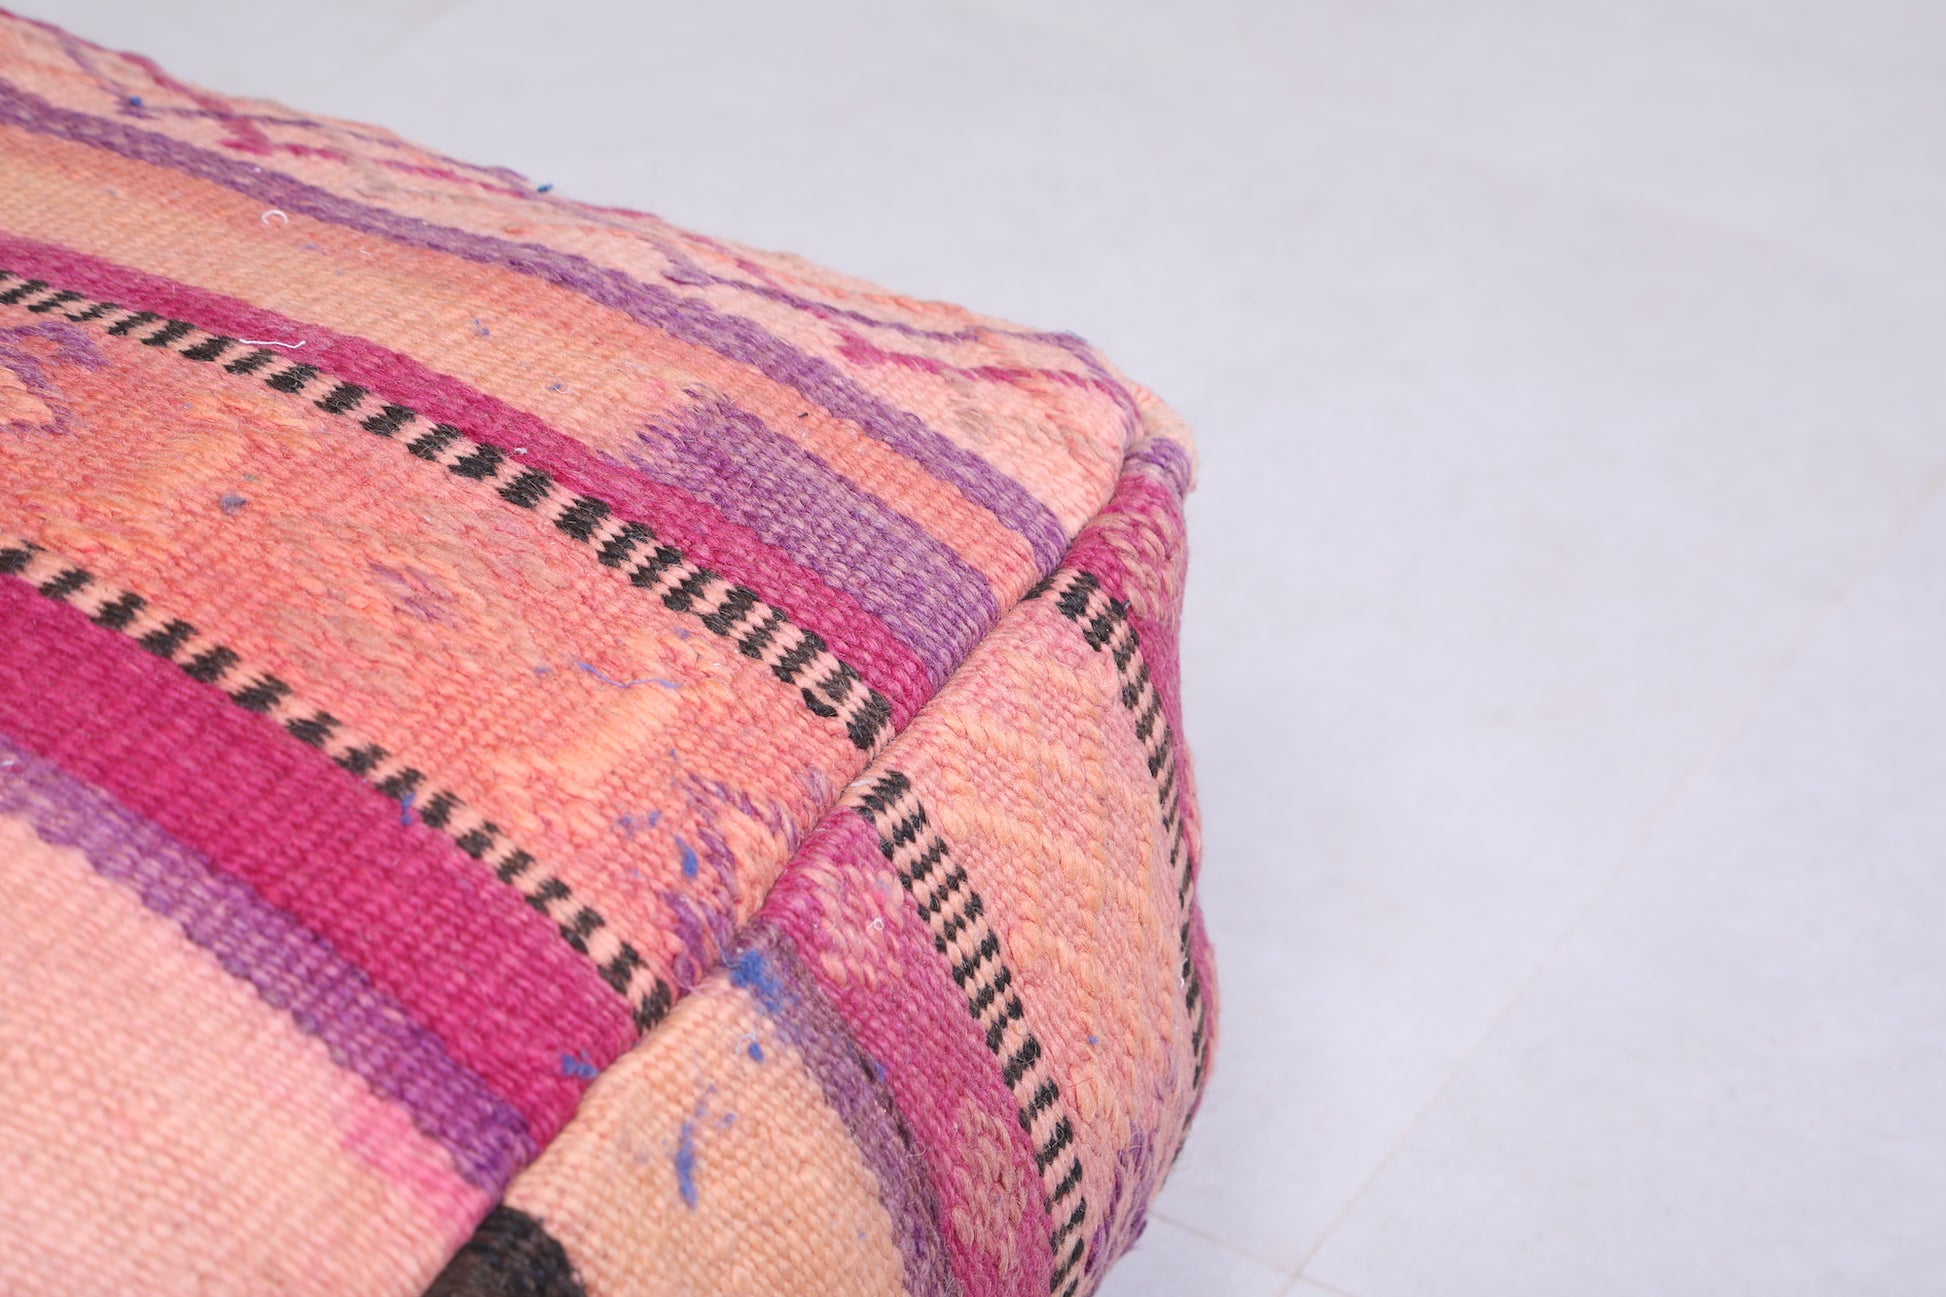 Two Moroccan Ottoman Kilim woven pouf Cushions